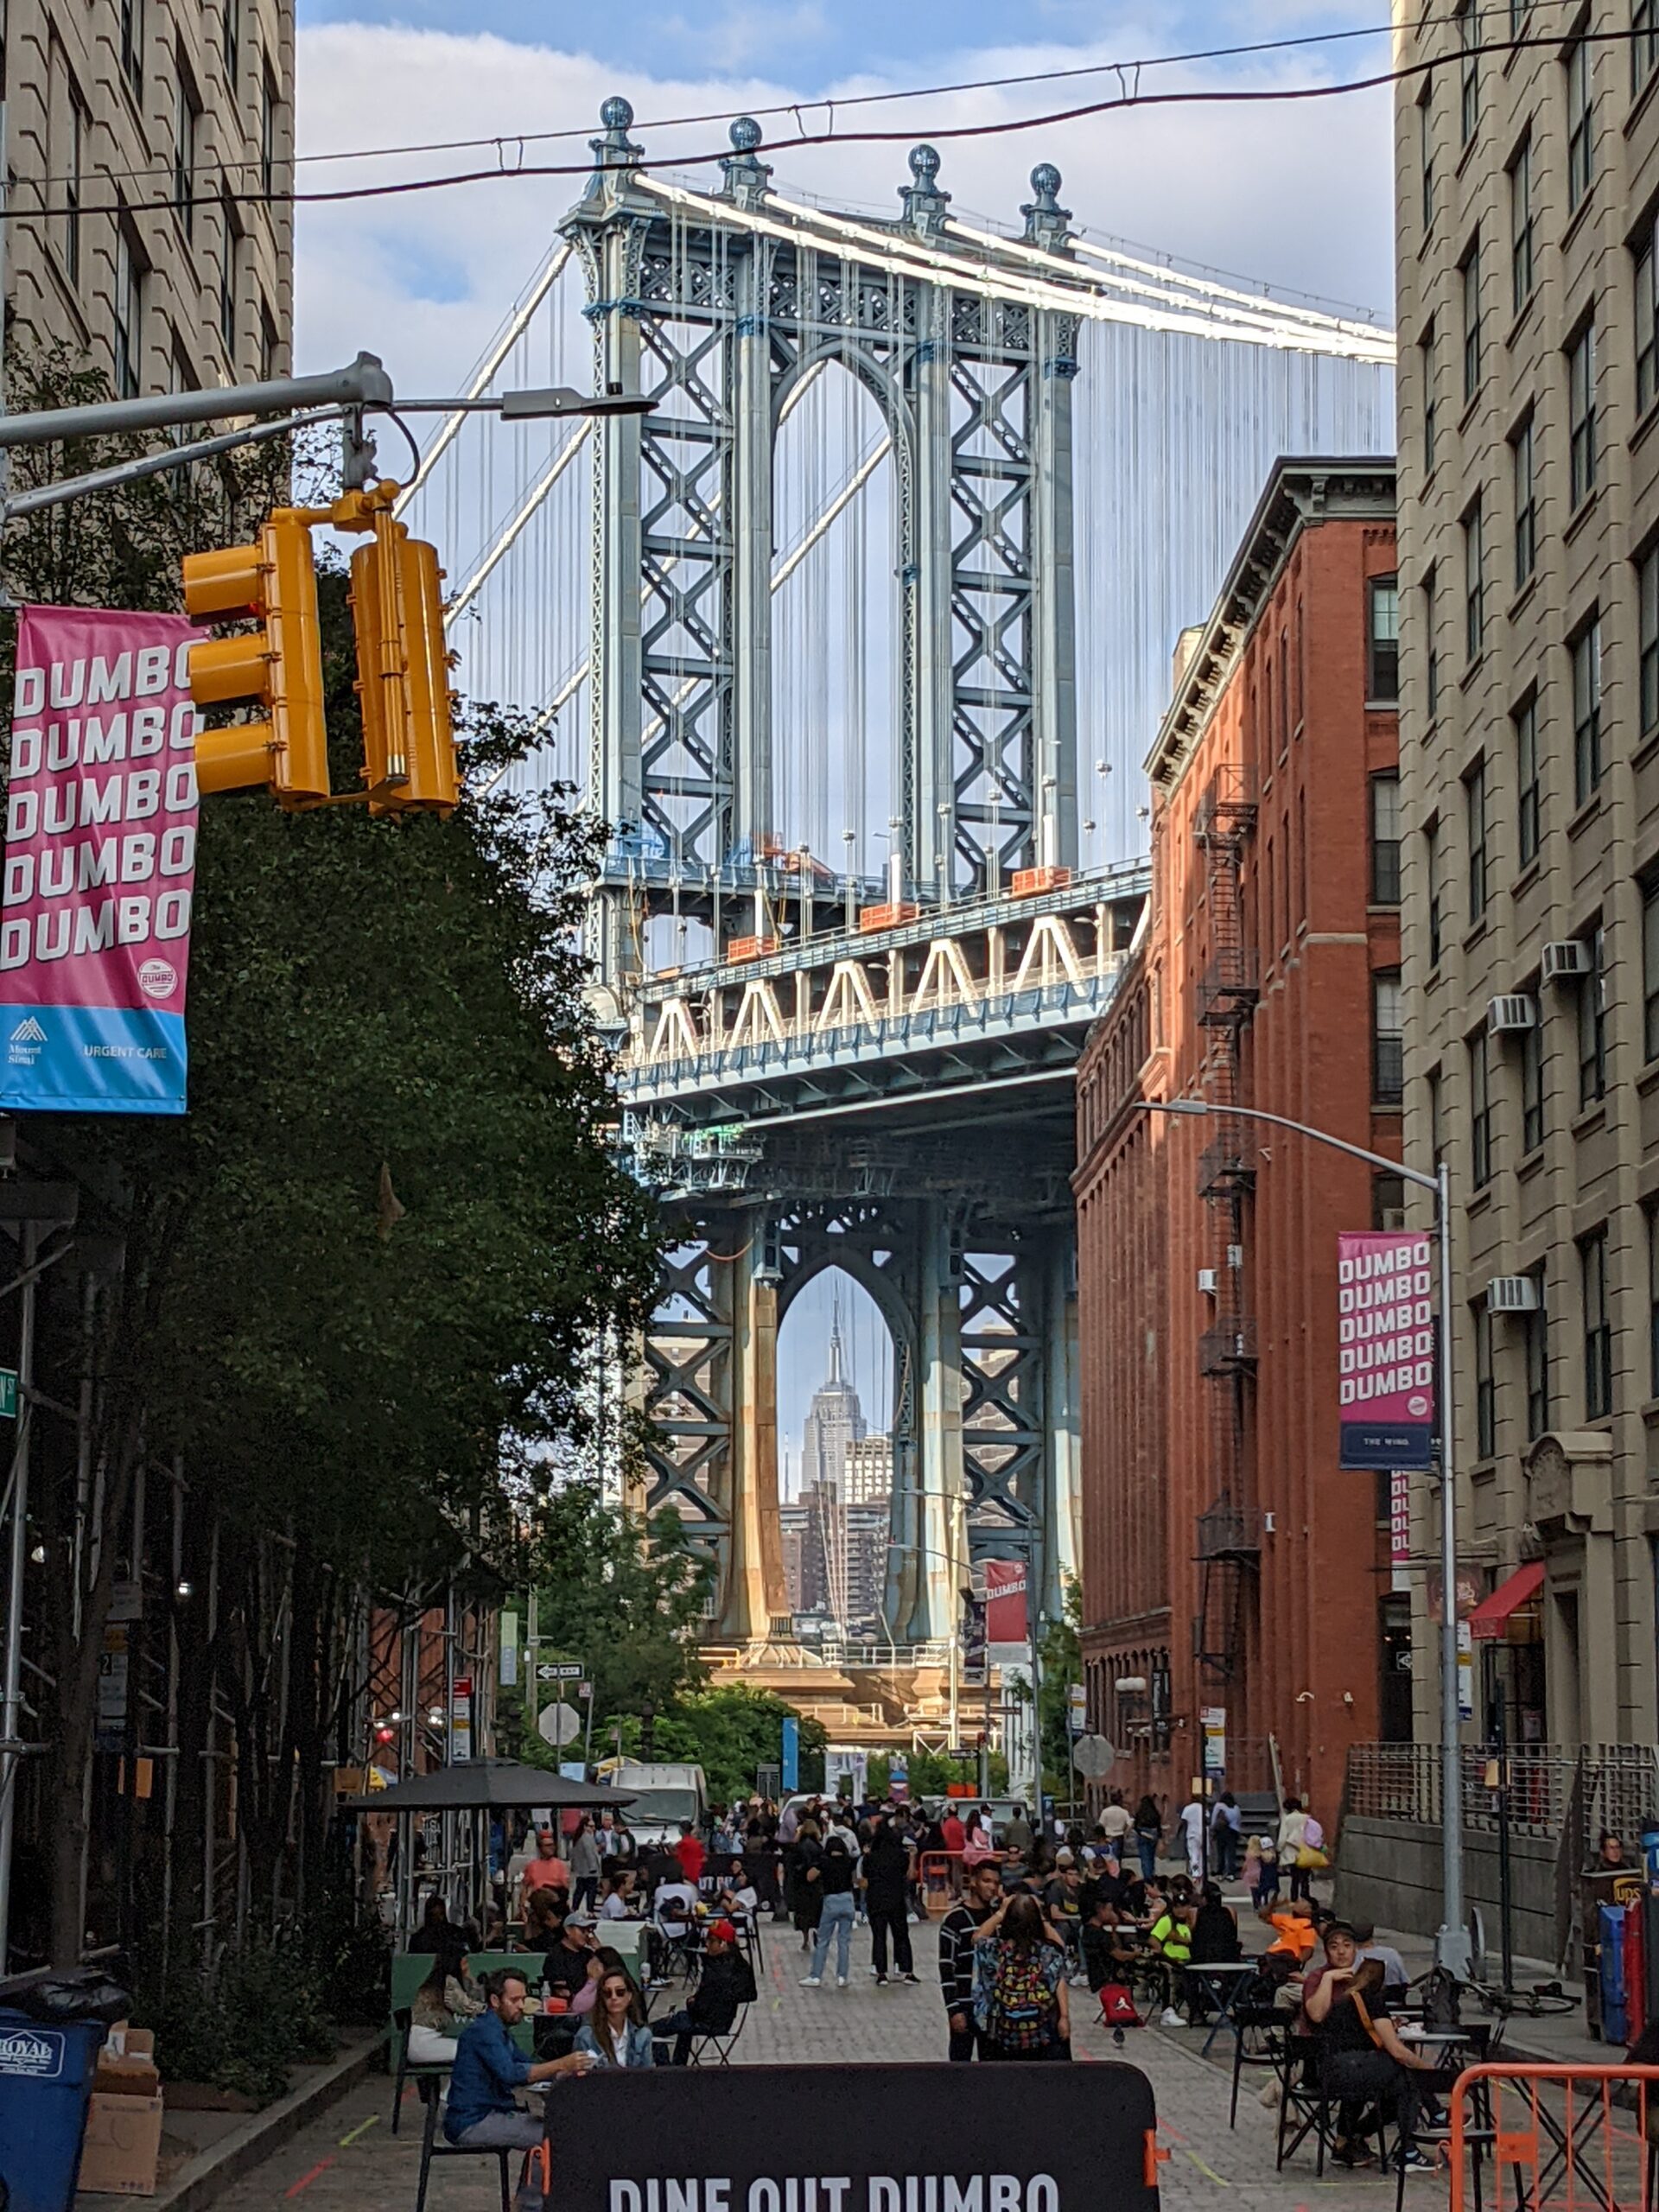 Manhattan Bridge pilon seen between buildings in DUMBO neighborhood of Brooklyn